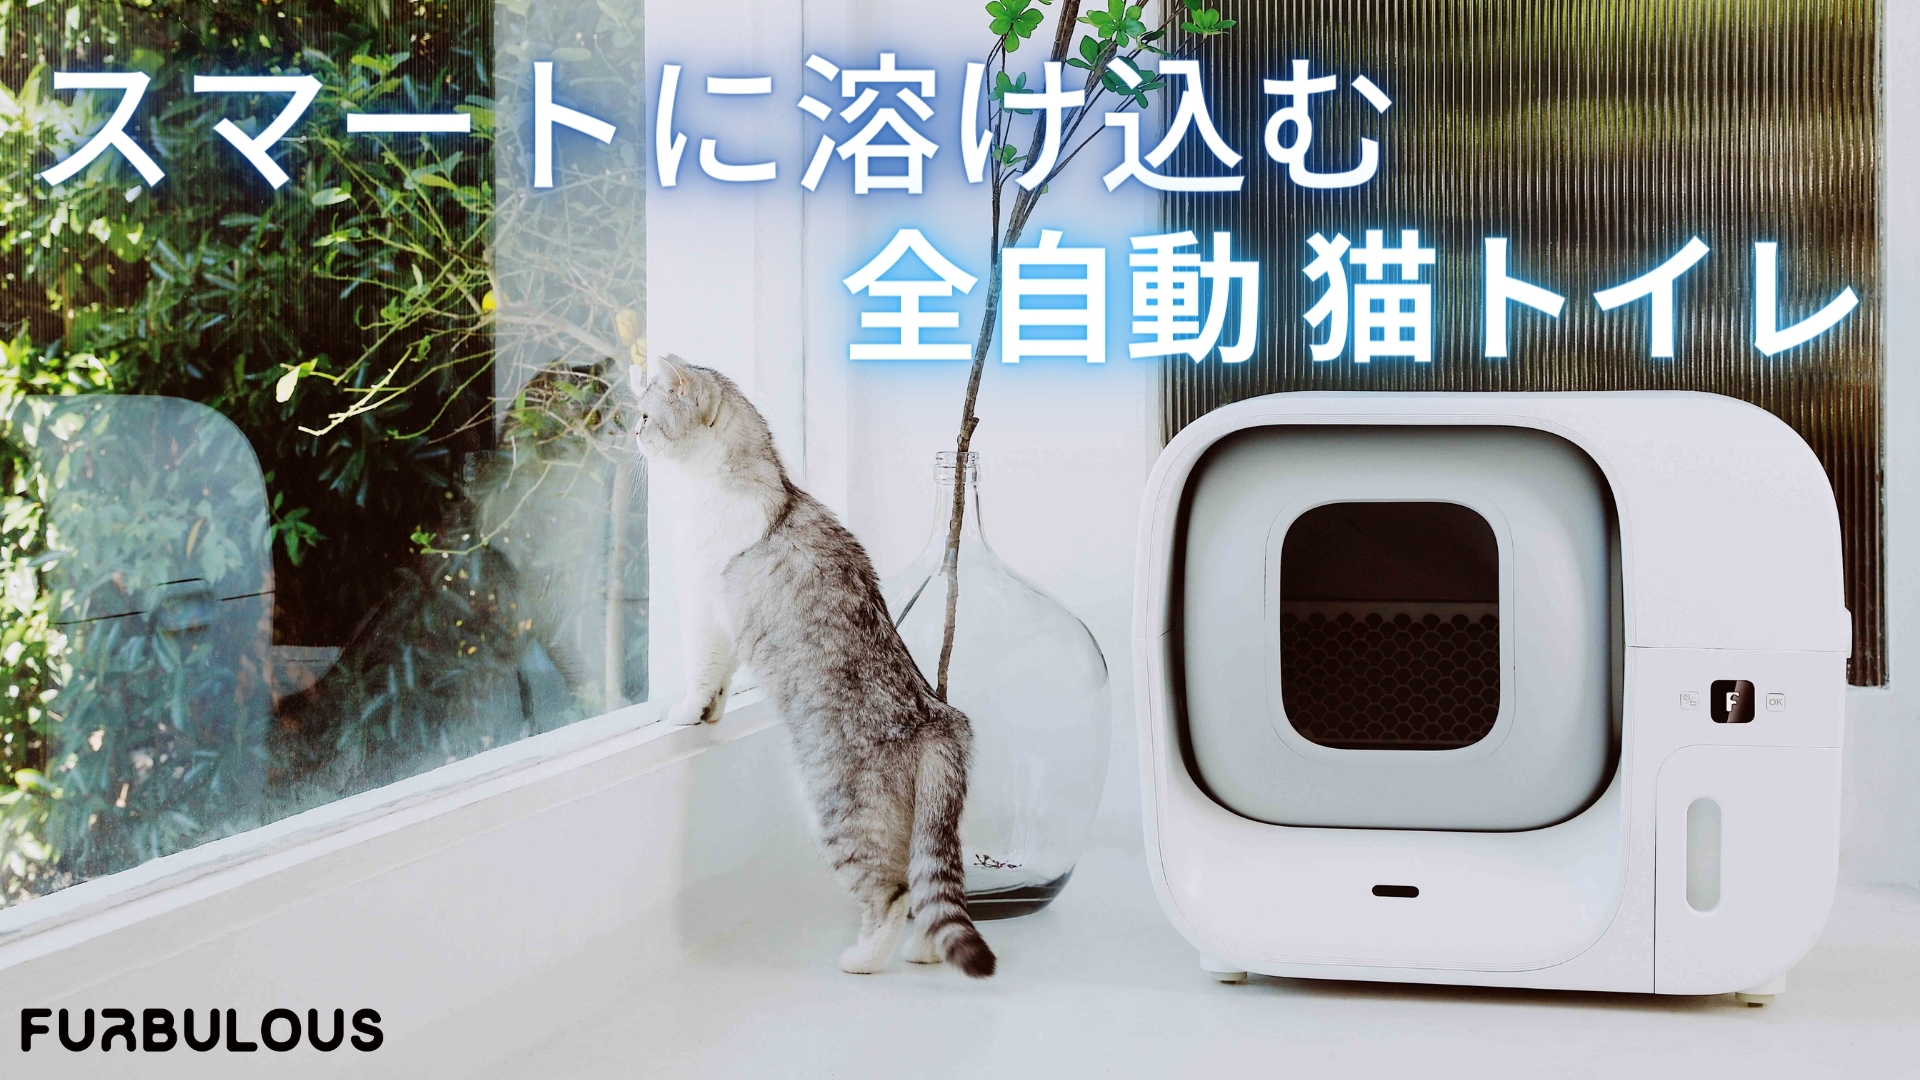 全く触れずに排泄物が処理できる「アタラシイ自動猫トイレ」 Makuake